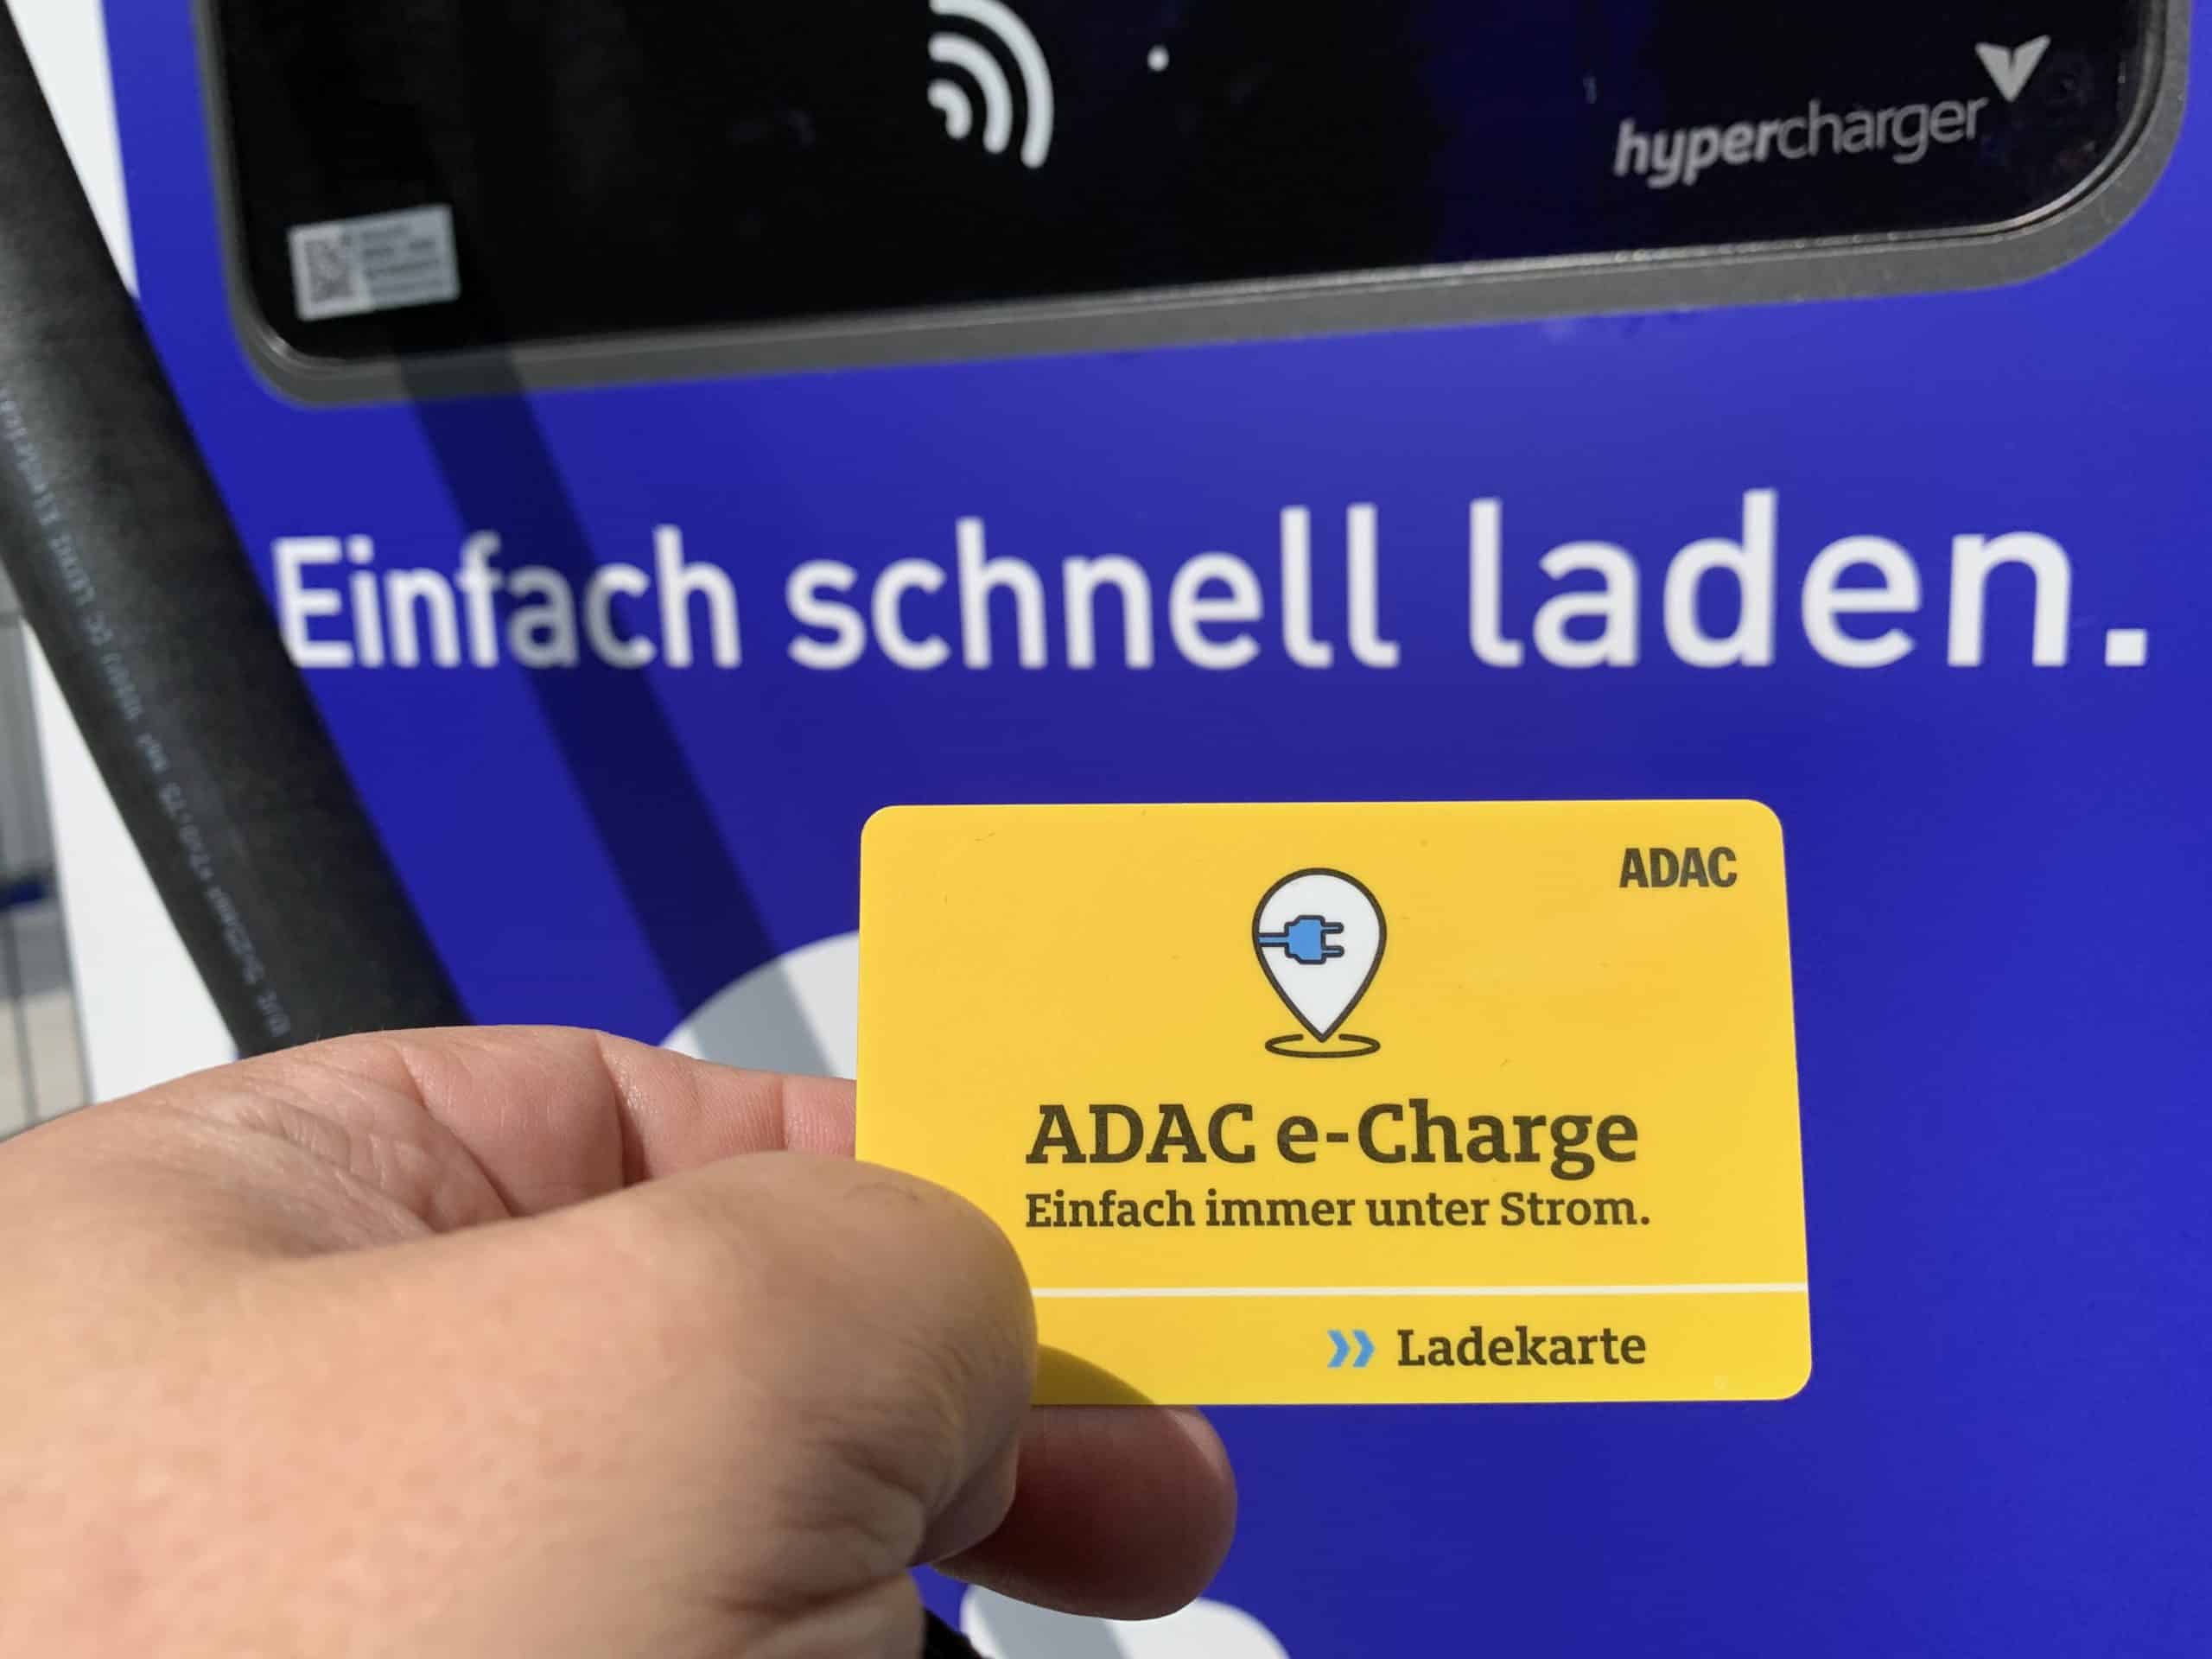 ADAC e-Charge Tarif punktet am EnBW Hypercharger.